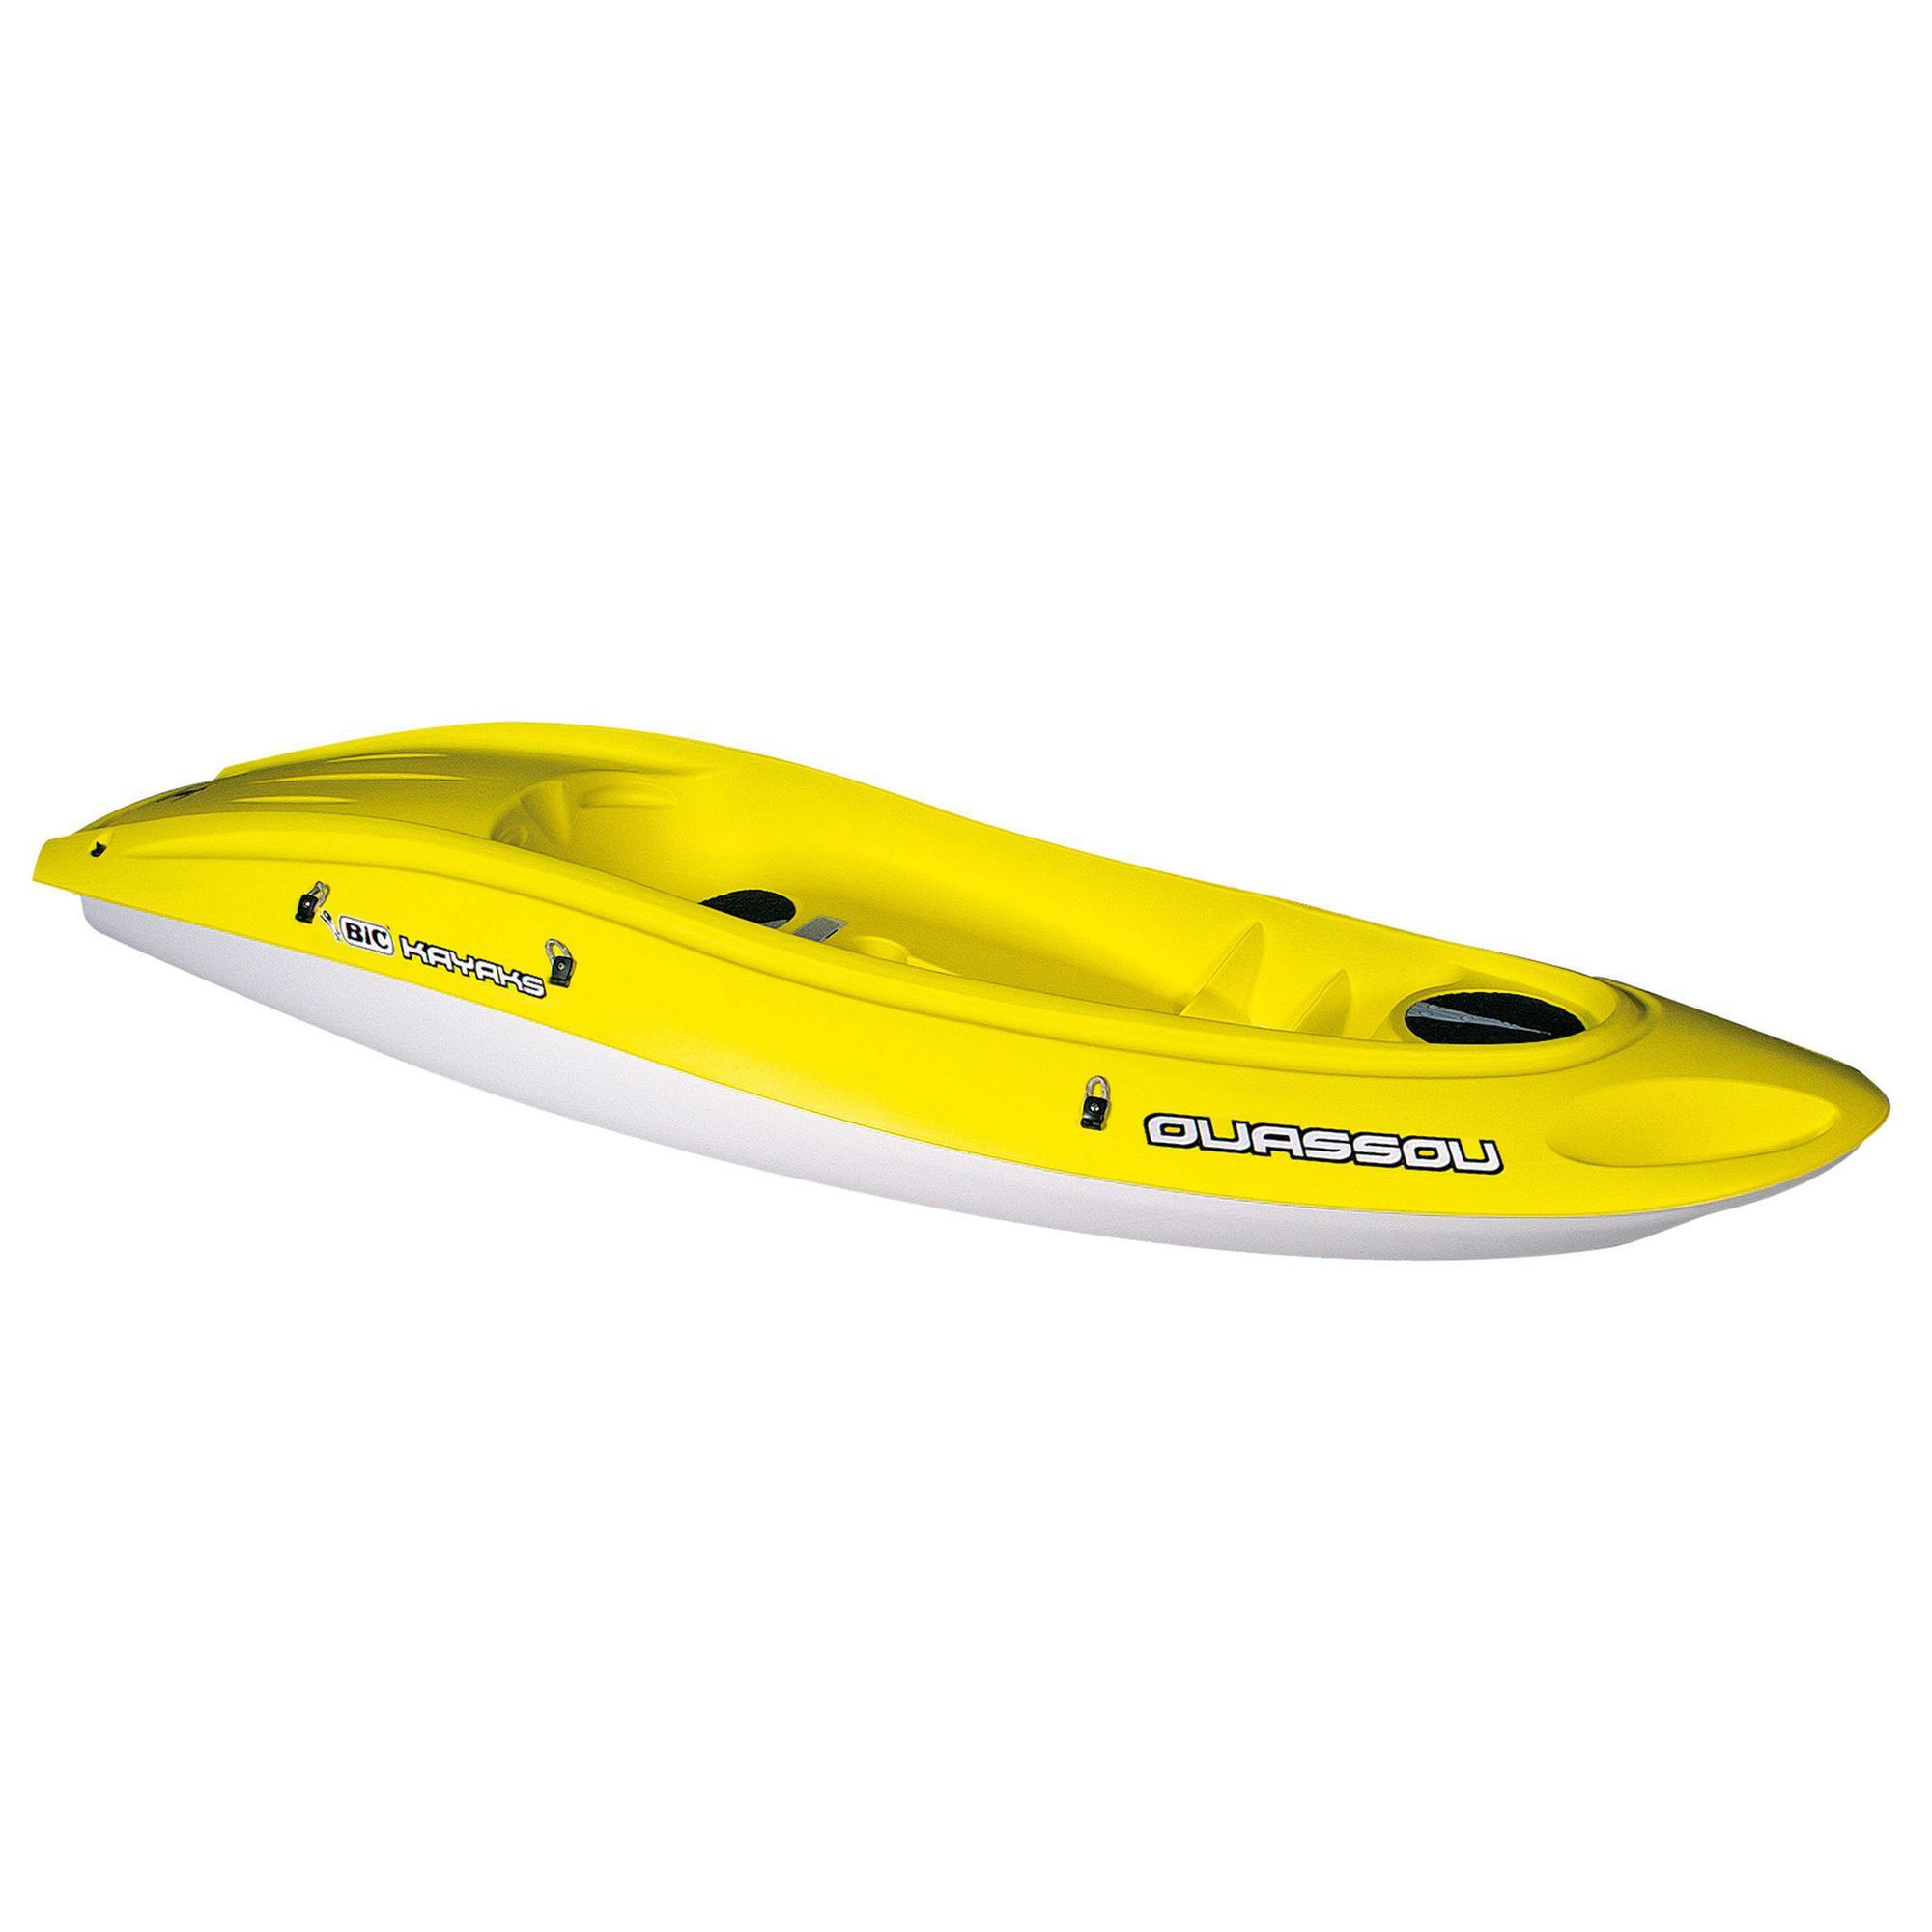 decathlon kayak price